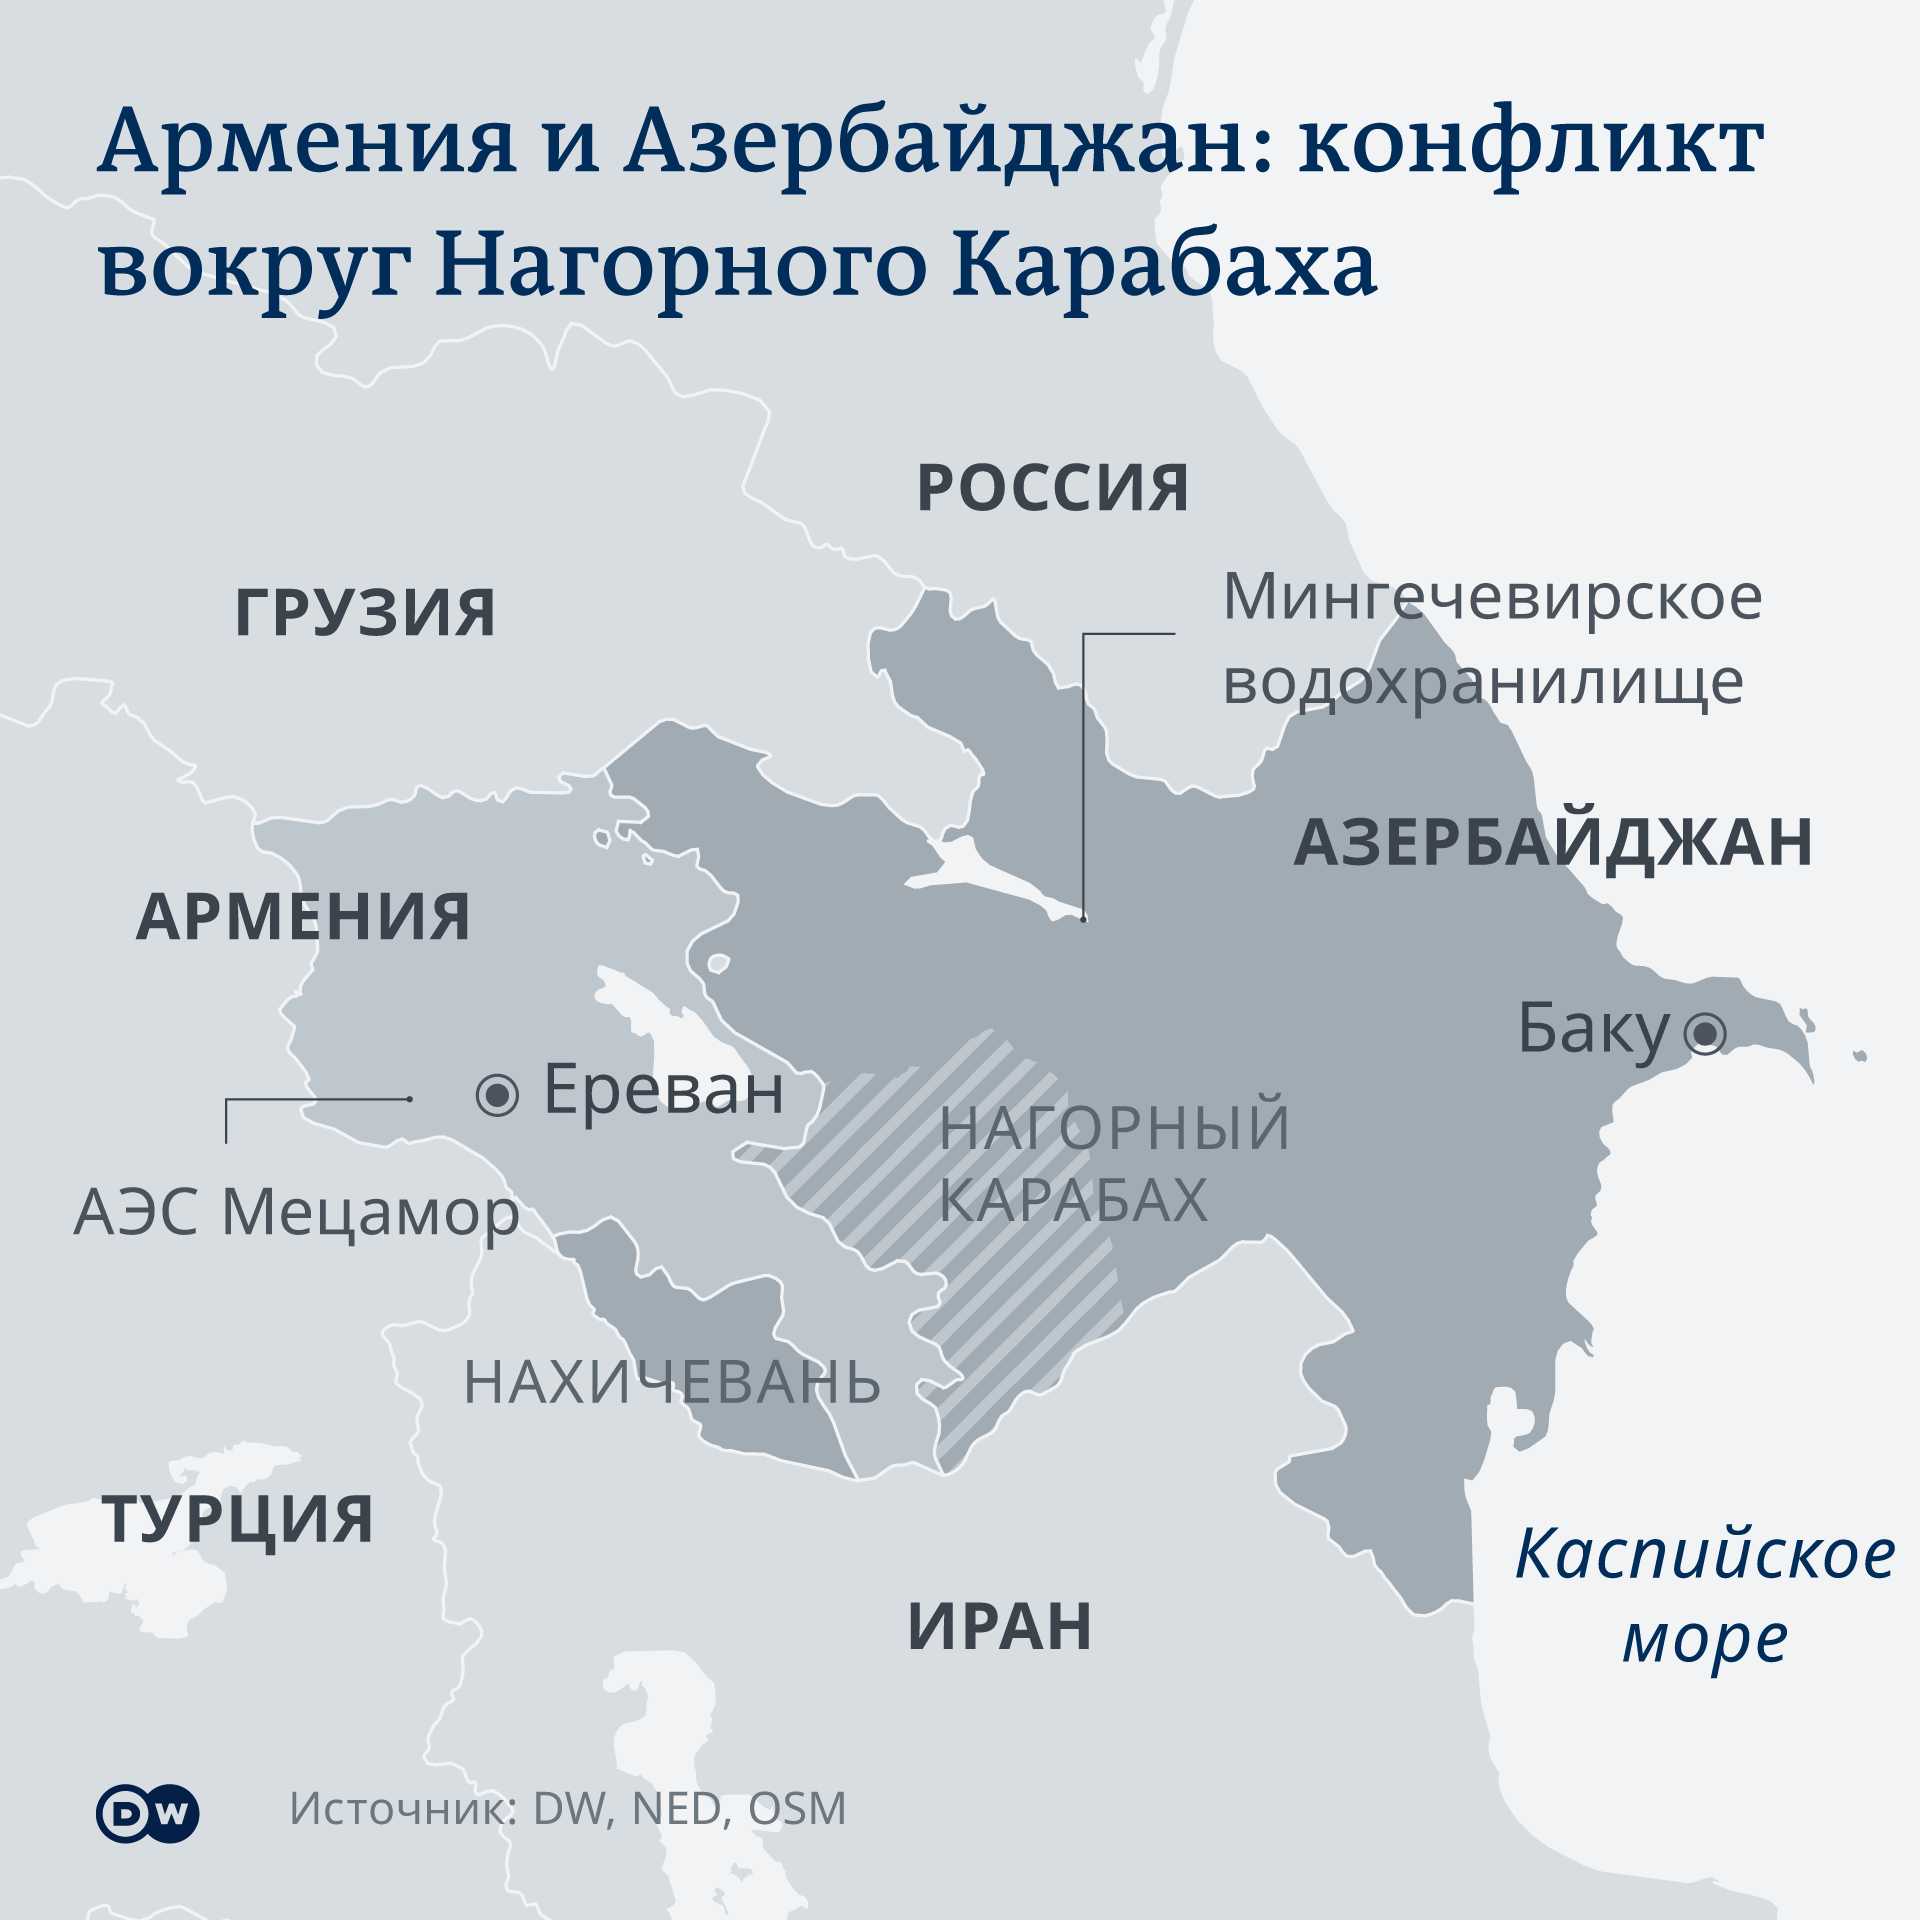 Karte - Armenien/Aserbaidschan - RU eiqrkitkiqxqkmp